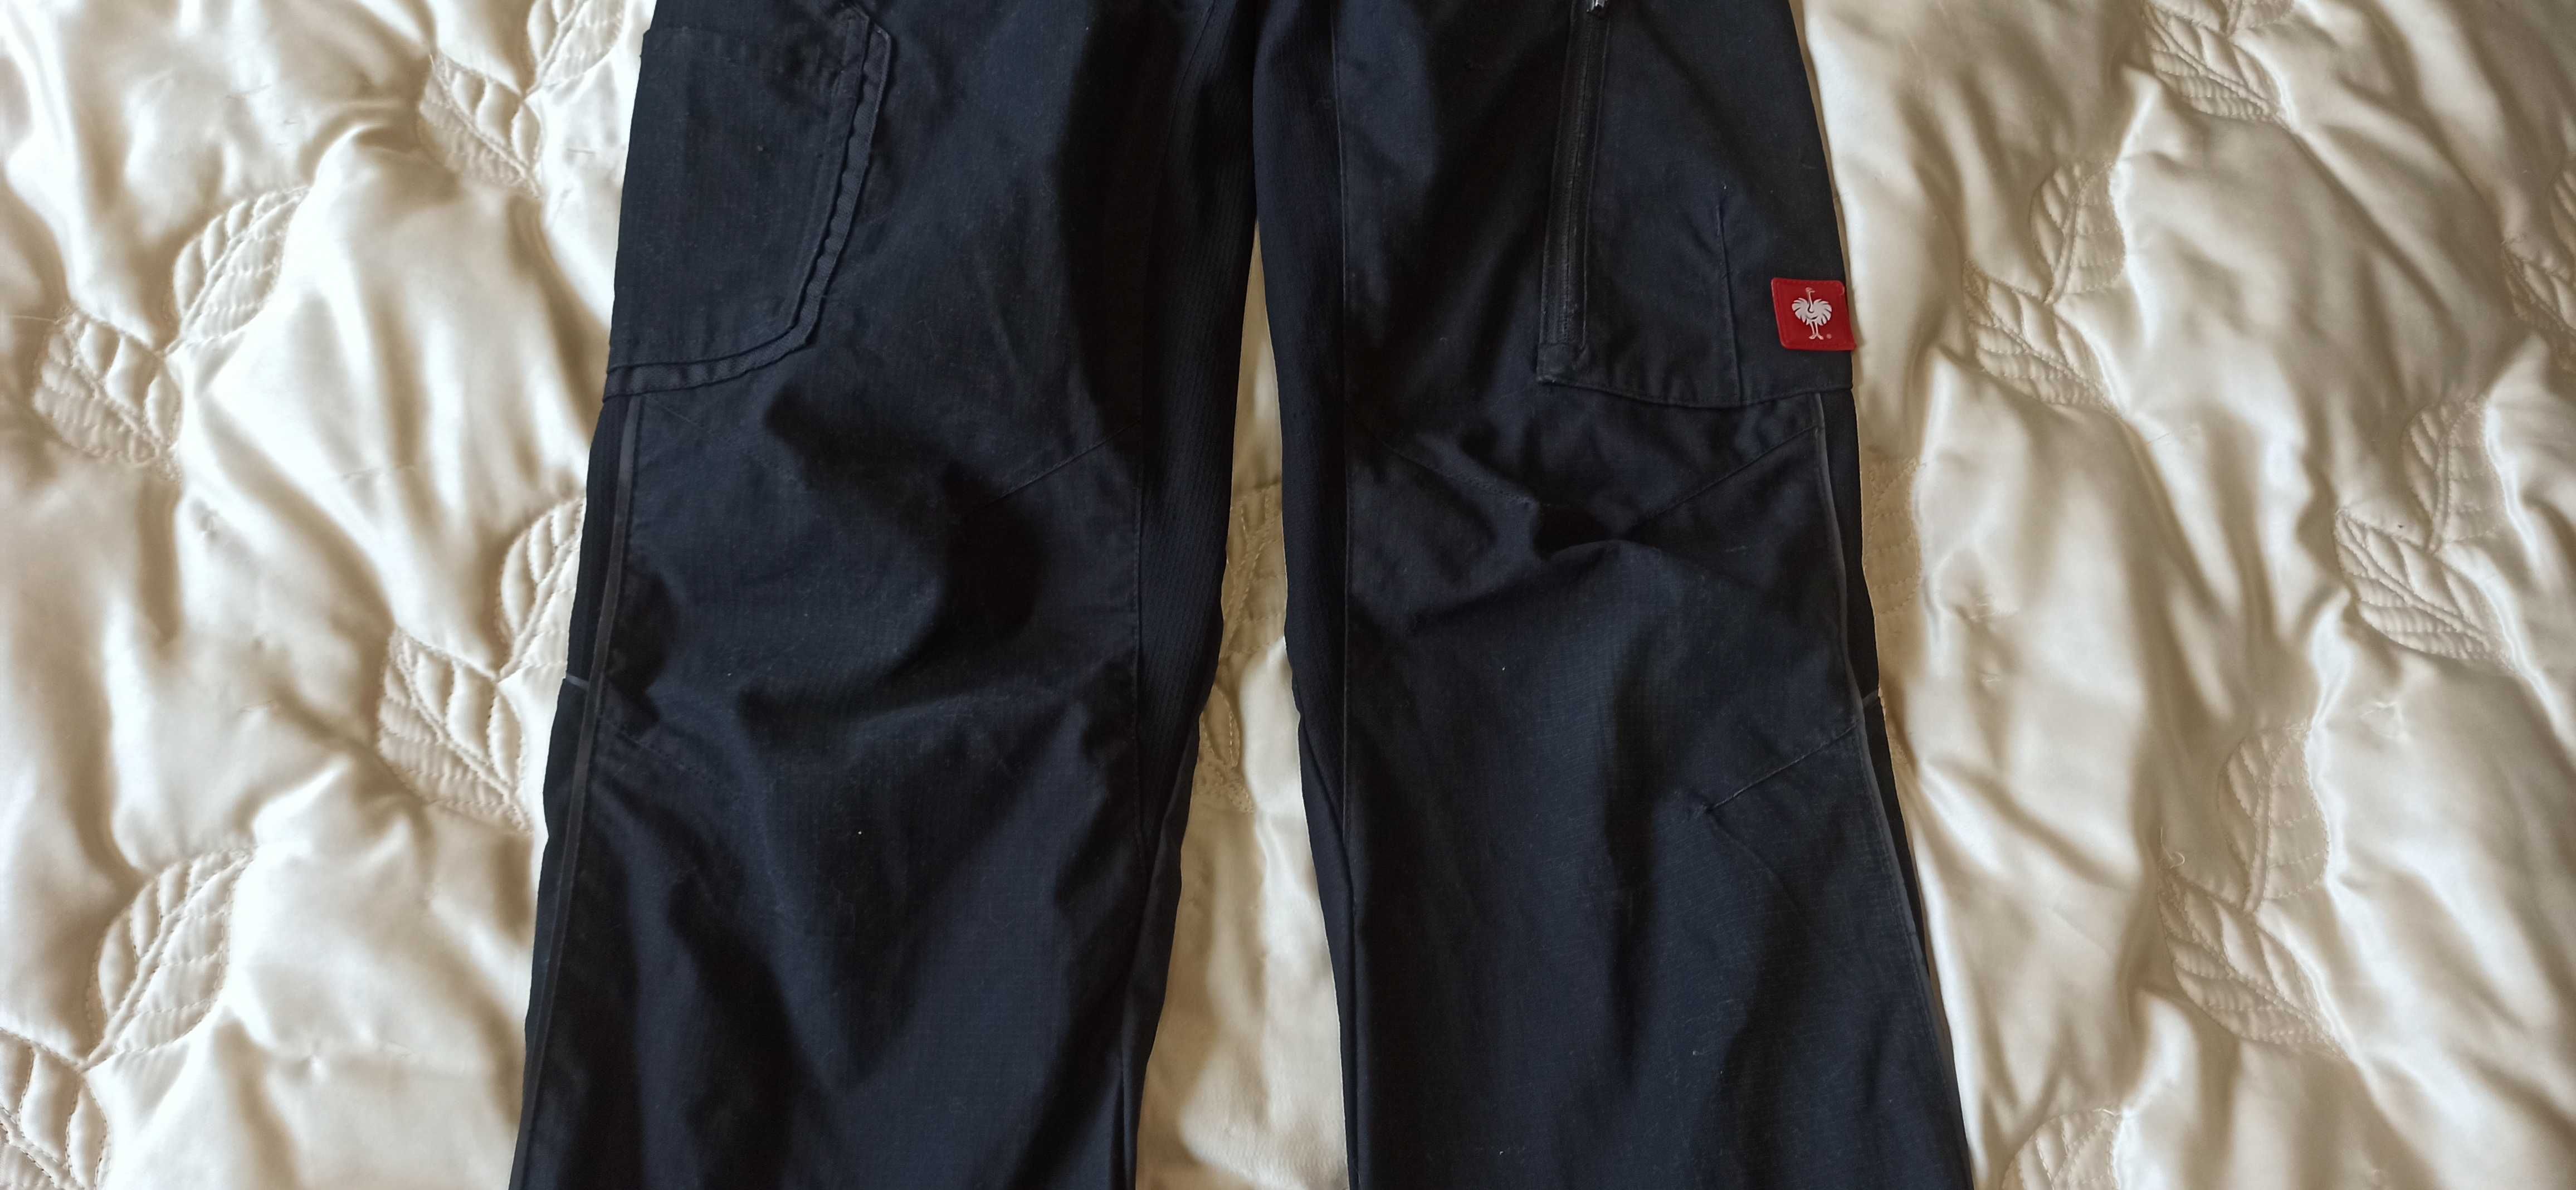 Męskie robocze spodnie elastyczne i koszulka Engelbert Strauss 46 i S